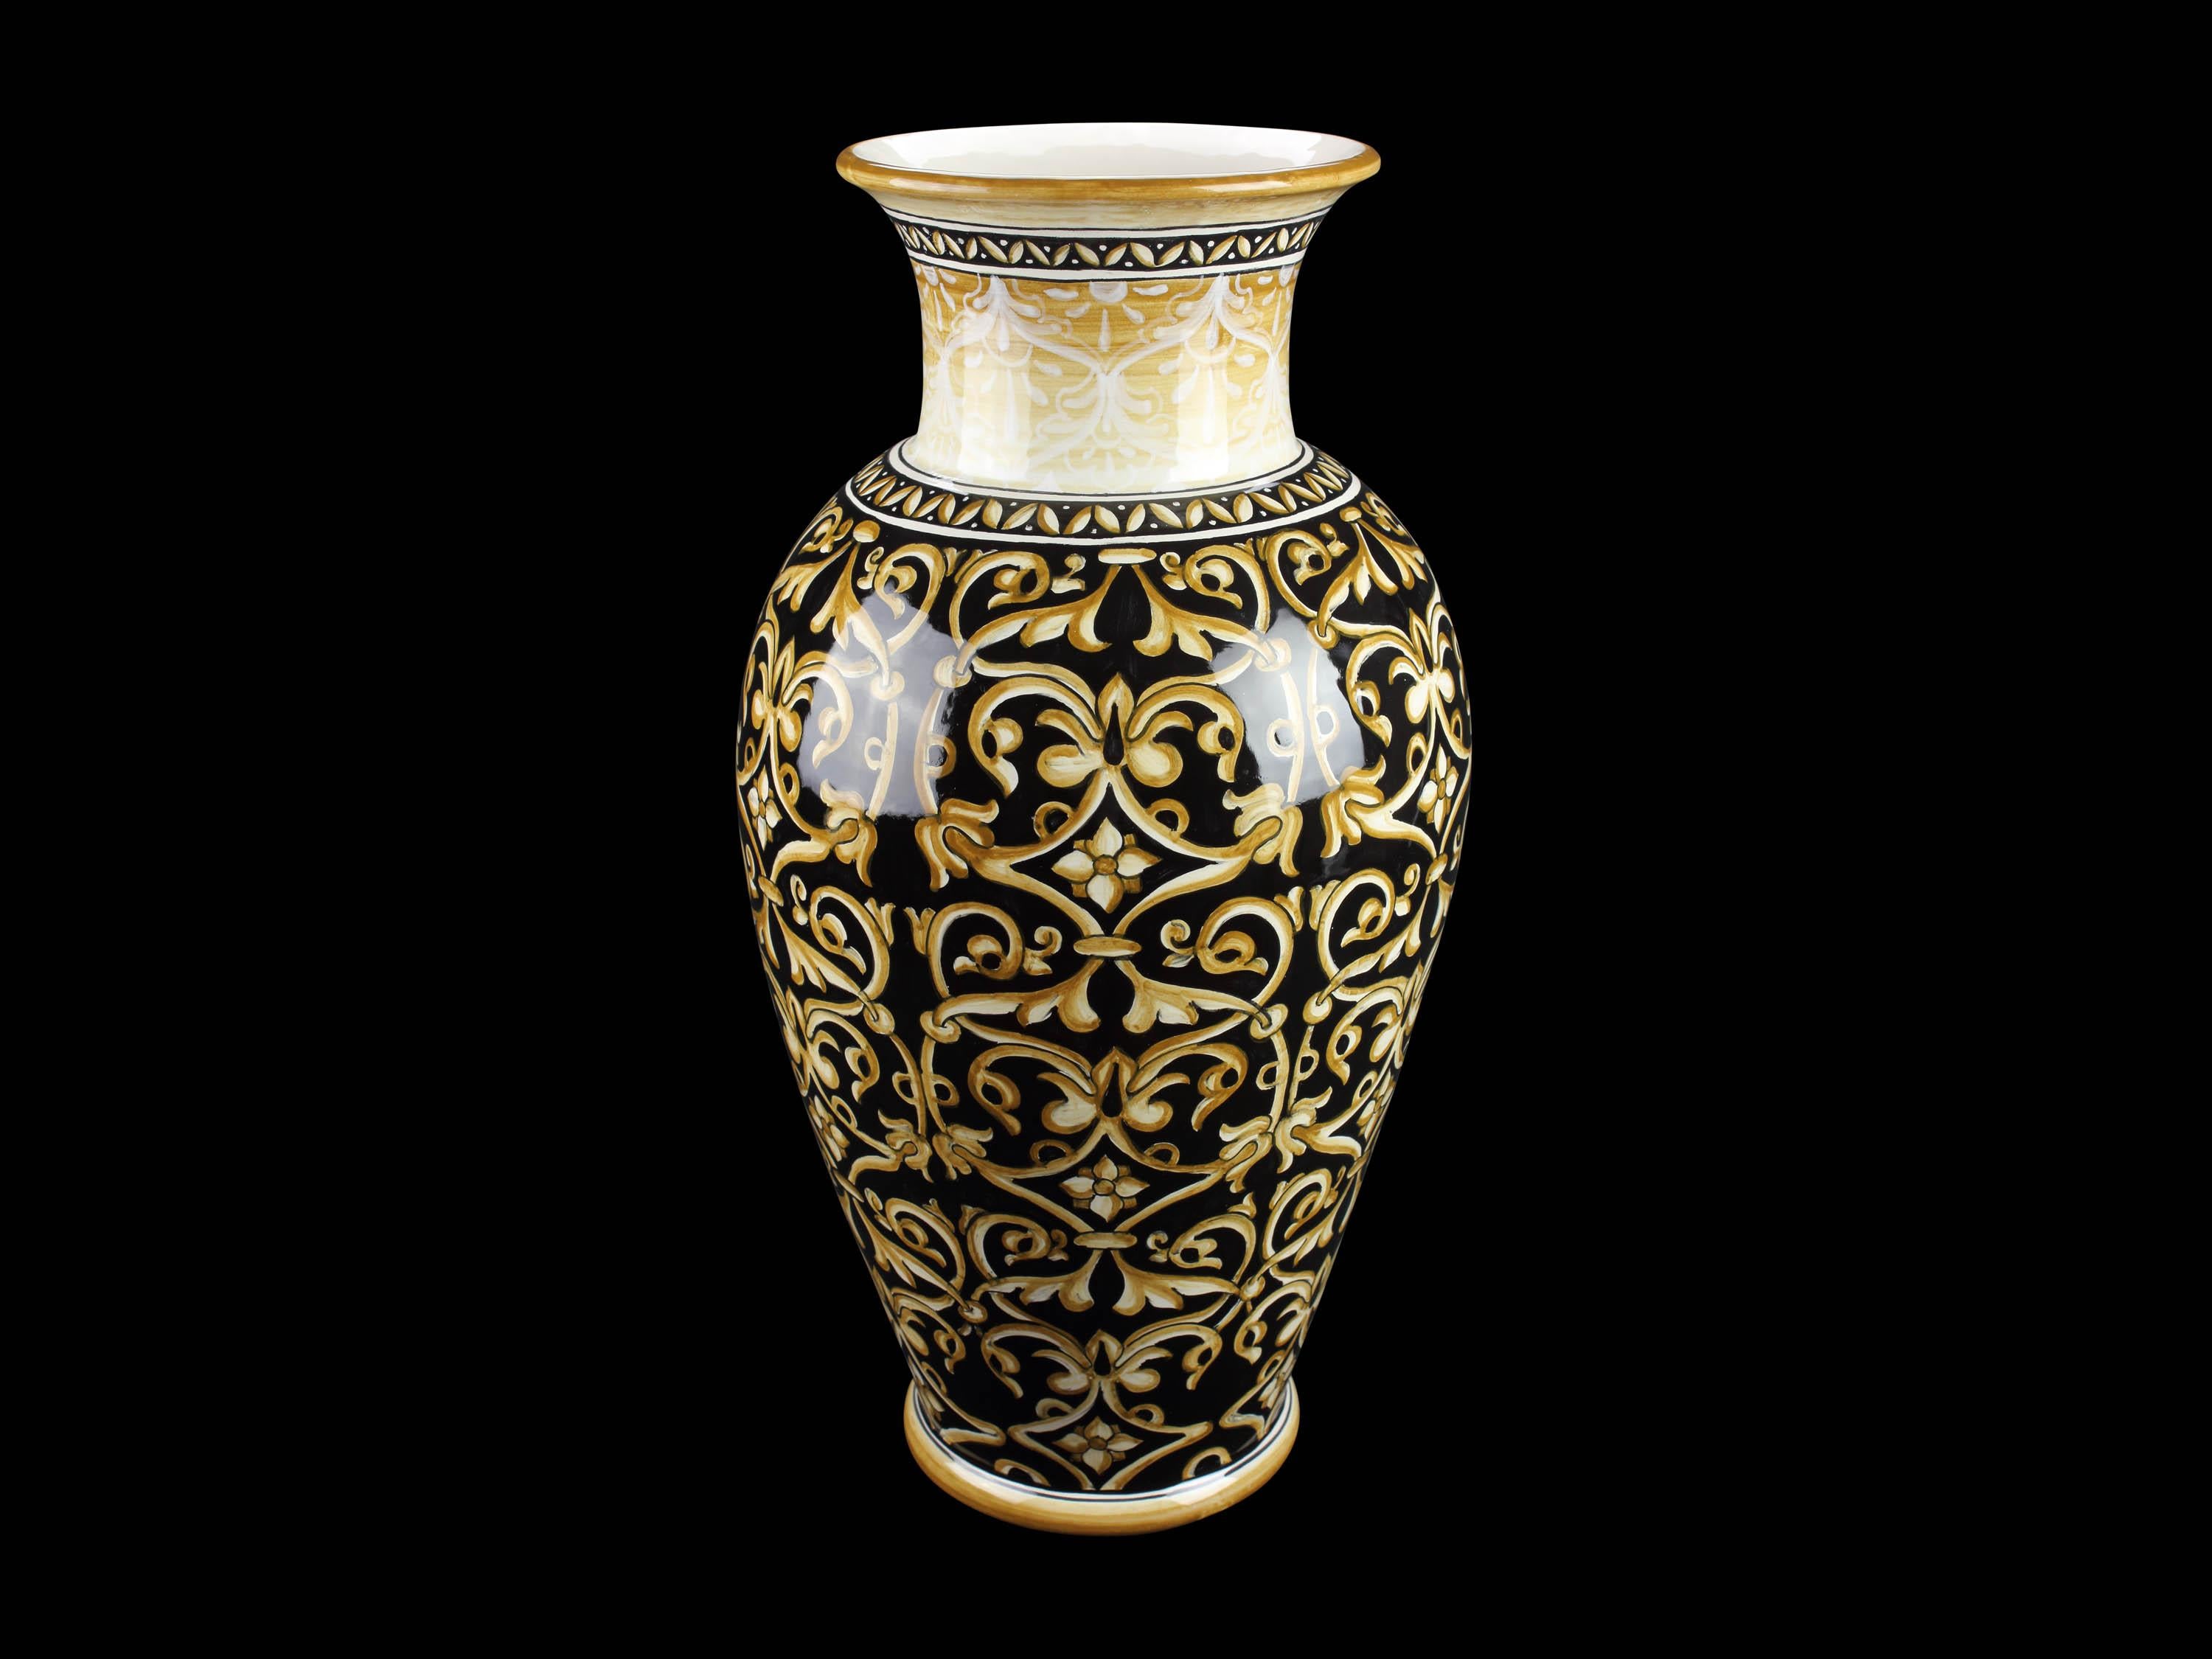 Vase en majolique à fond noir décoré en jaune d'or. Le vase est formé d'un corps très mince et d'un col évasé se terminant par un bord plutôt évasé : il est fabriqué et peint à la main en Italie, selon la technique de peinture originale de la